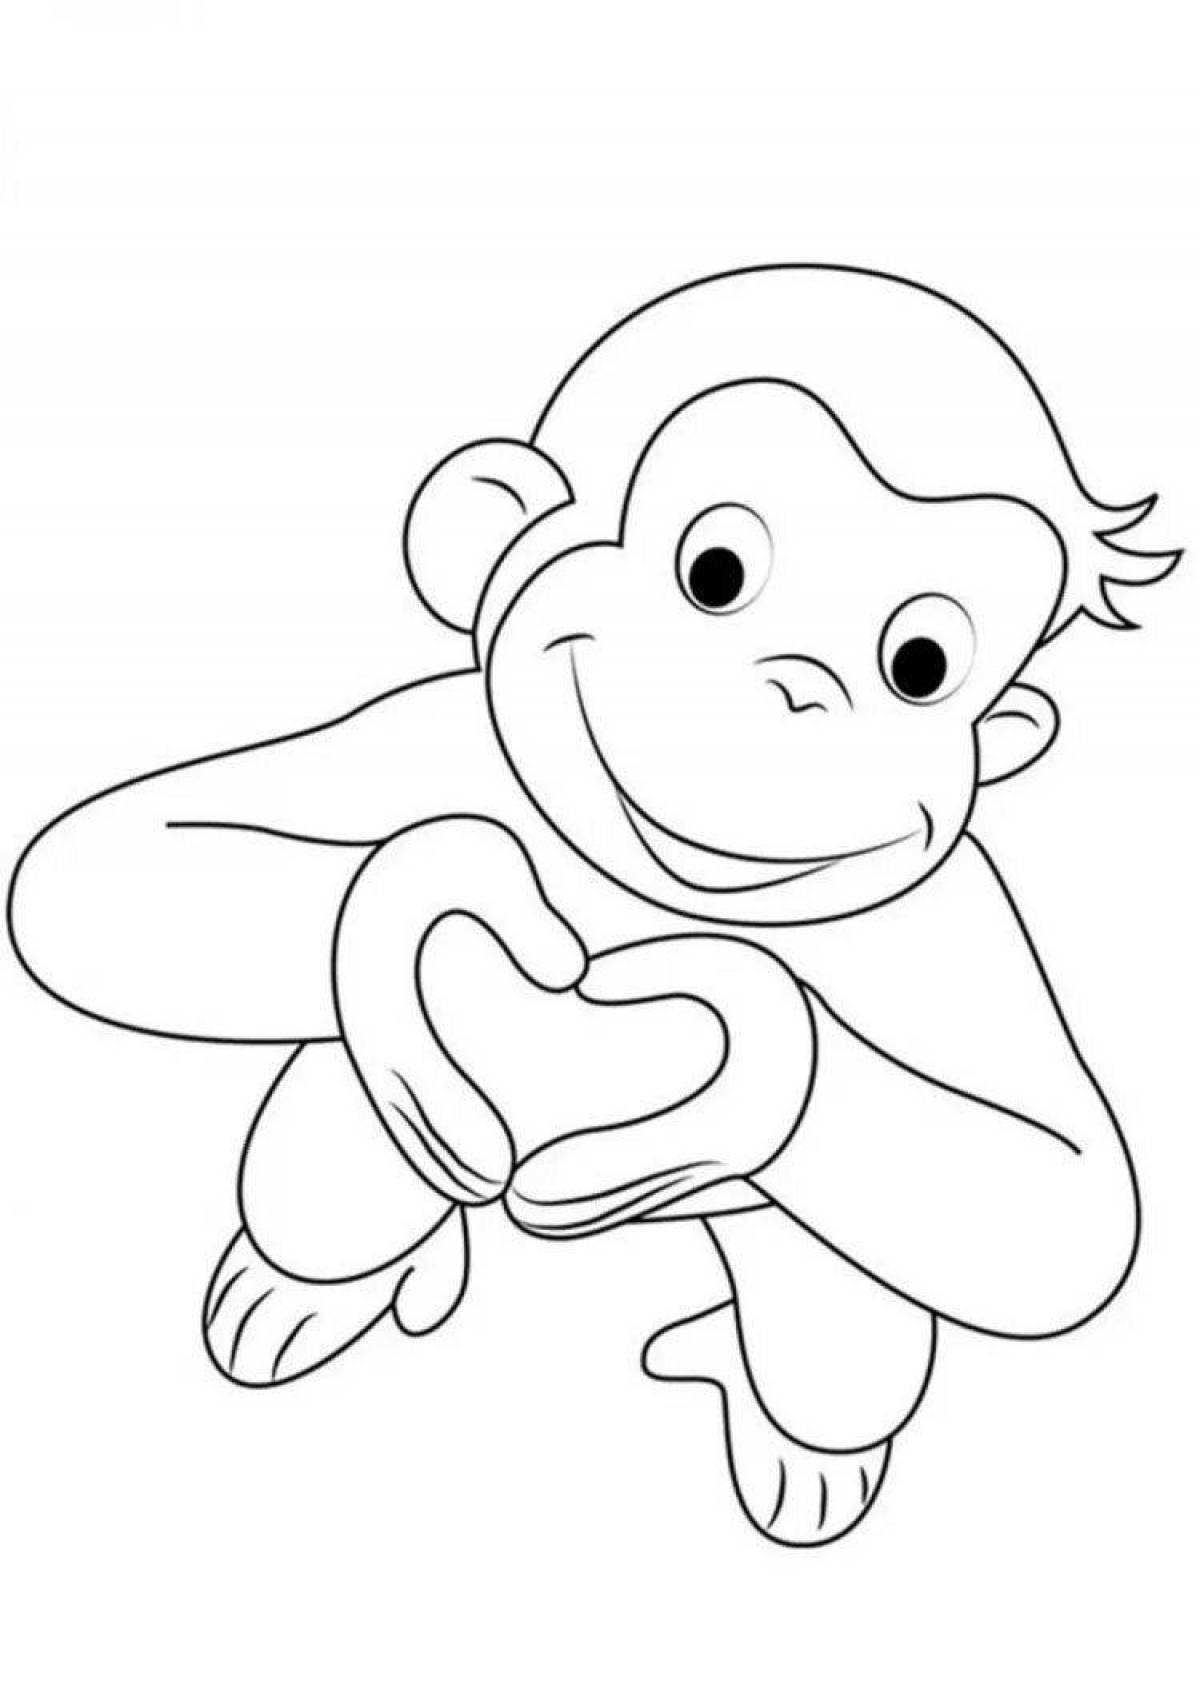 Раскраски с милыми животными для детей обезьяны раскраски для детей | Премиум векторы